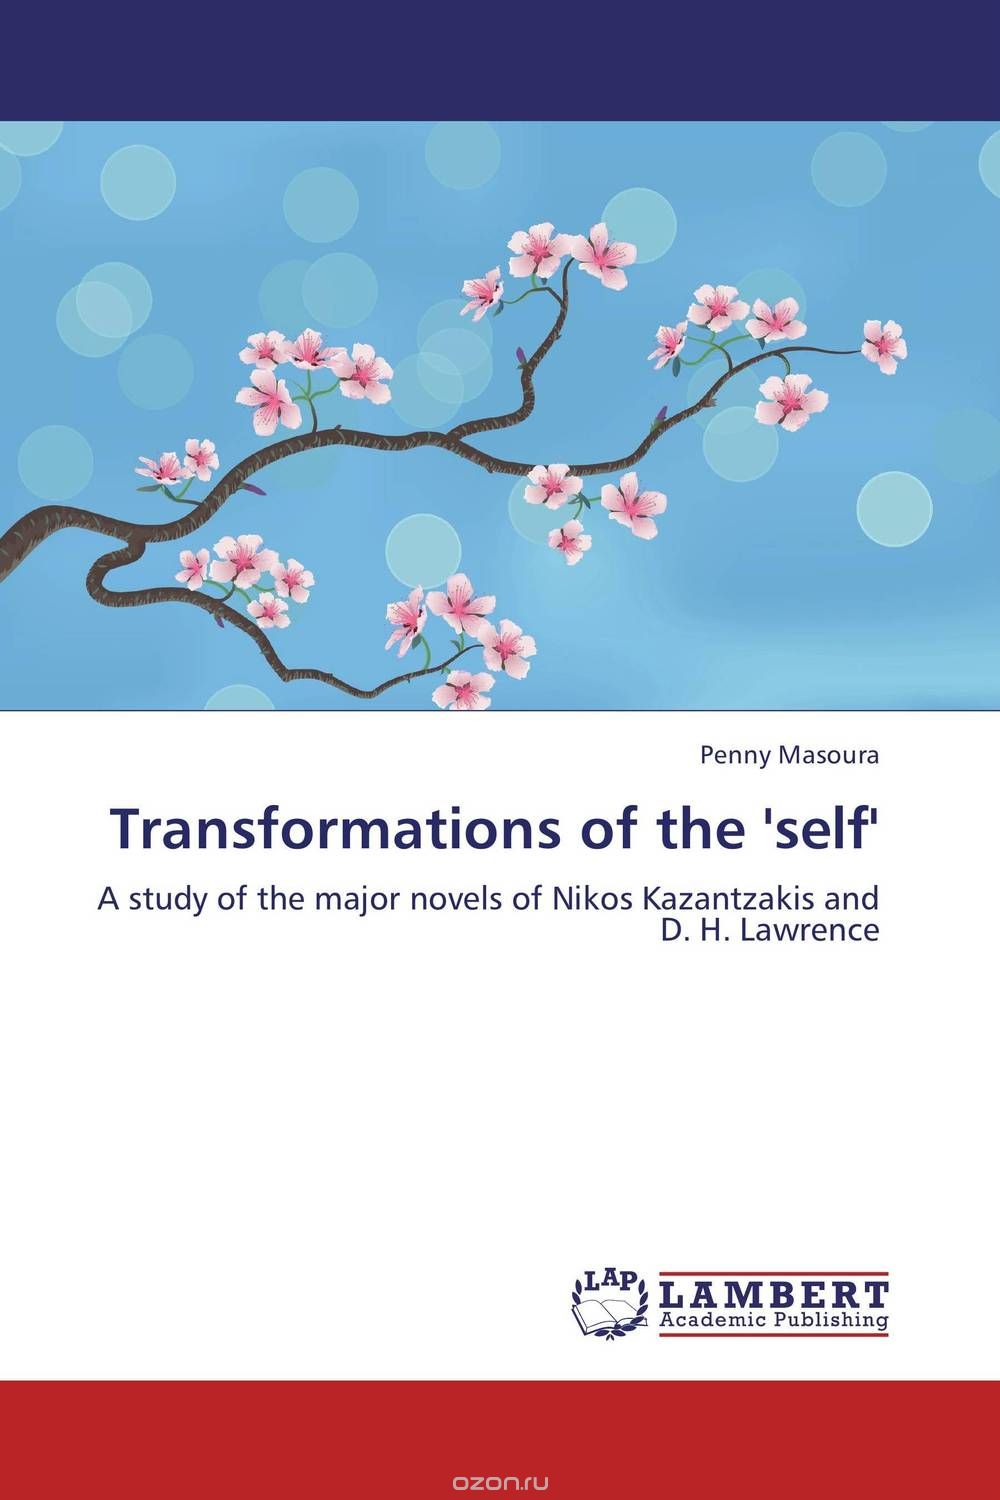 Скачать книгу "Transformations of the 'self'"